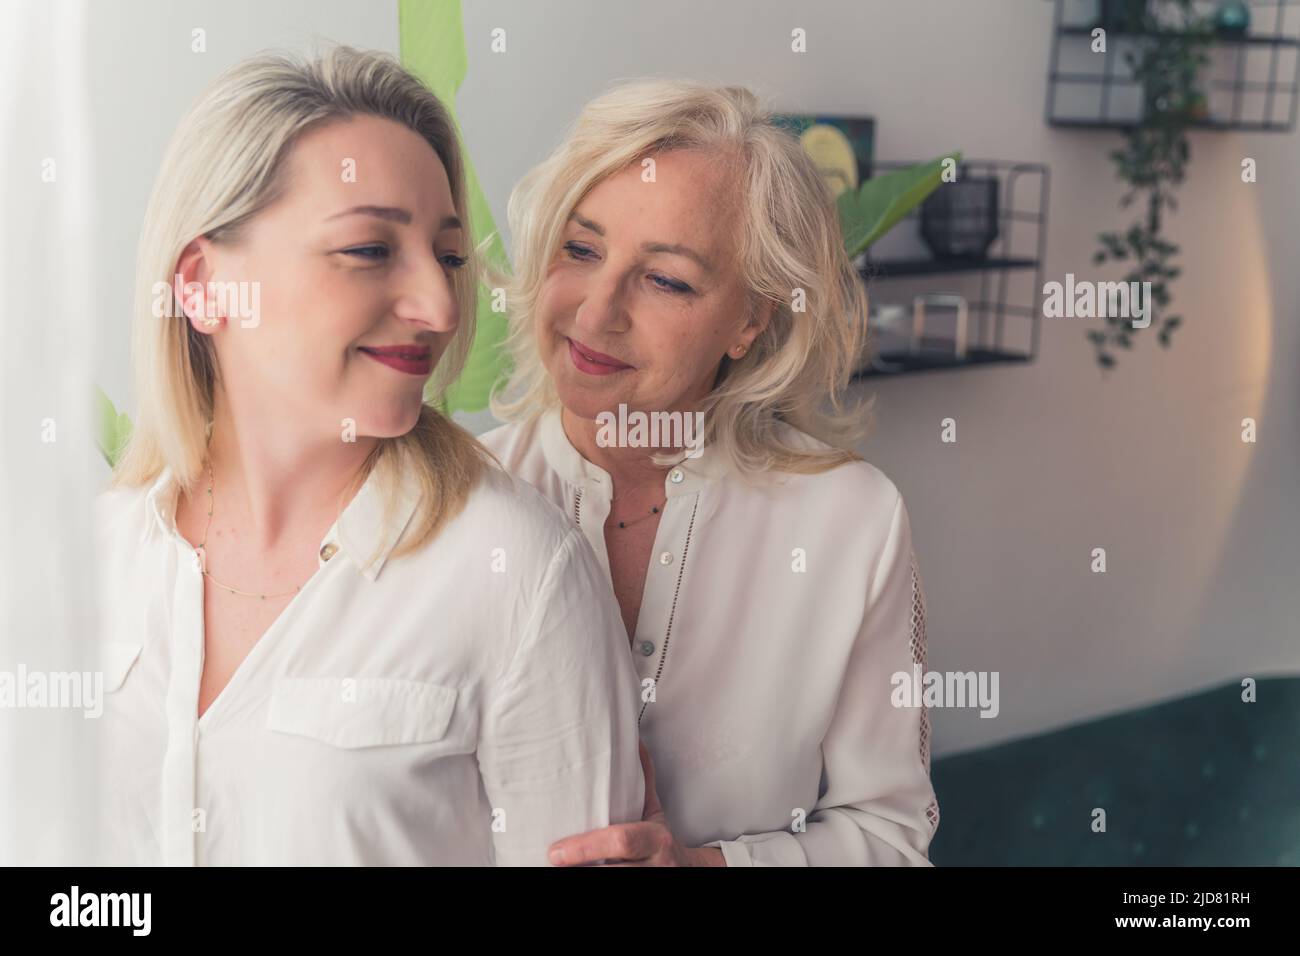 Due donne europee con capelli biondi e camicie bianche con bottoni che si accamonano l'una accanto all'altra in un moderno soggiorno. Foto di alta qualità Foto Stock